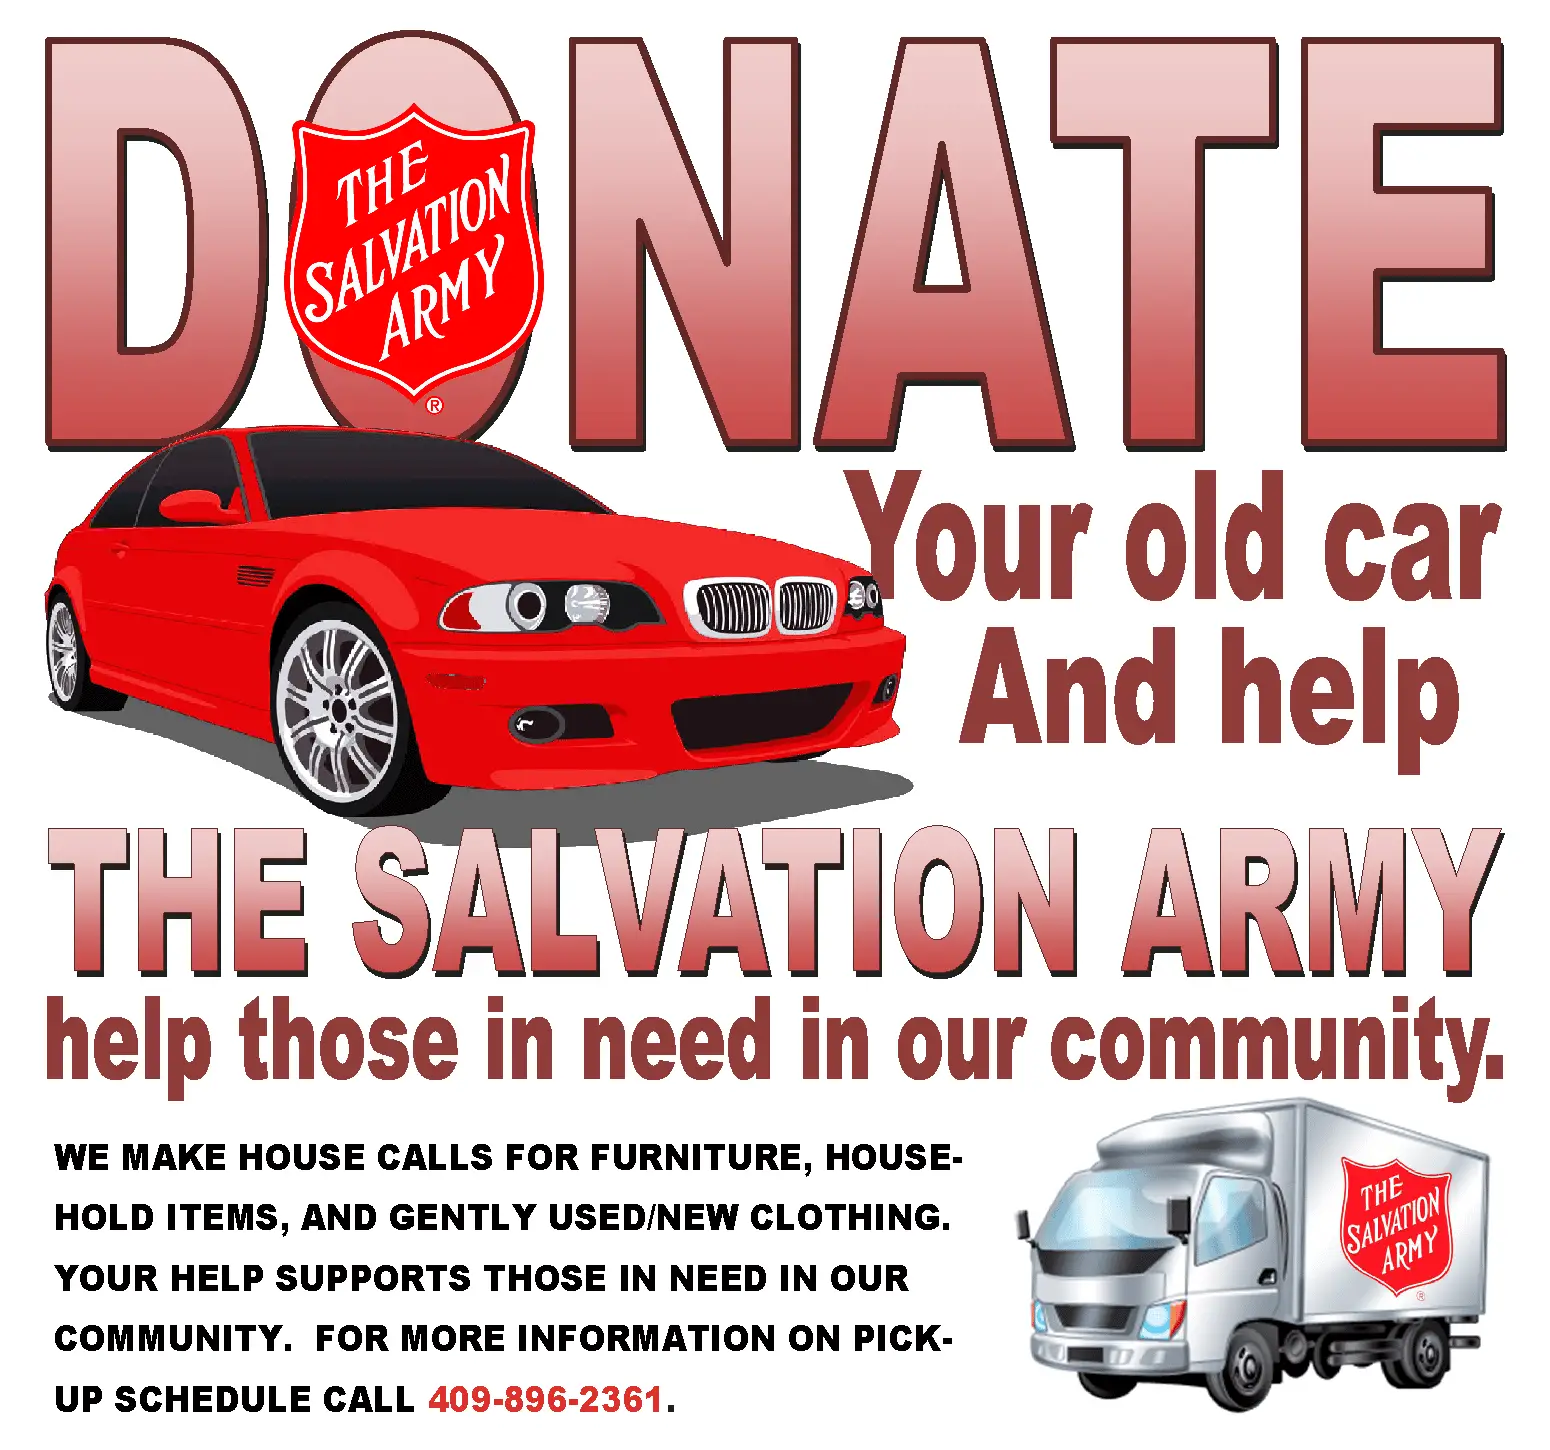 Car Donation In Nj